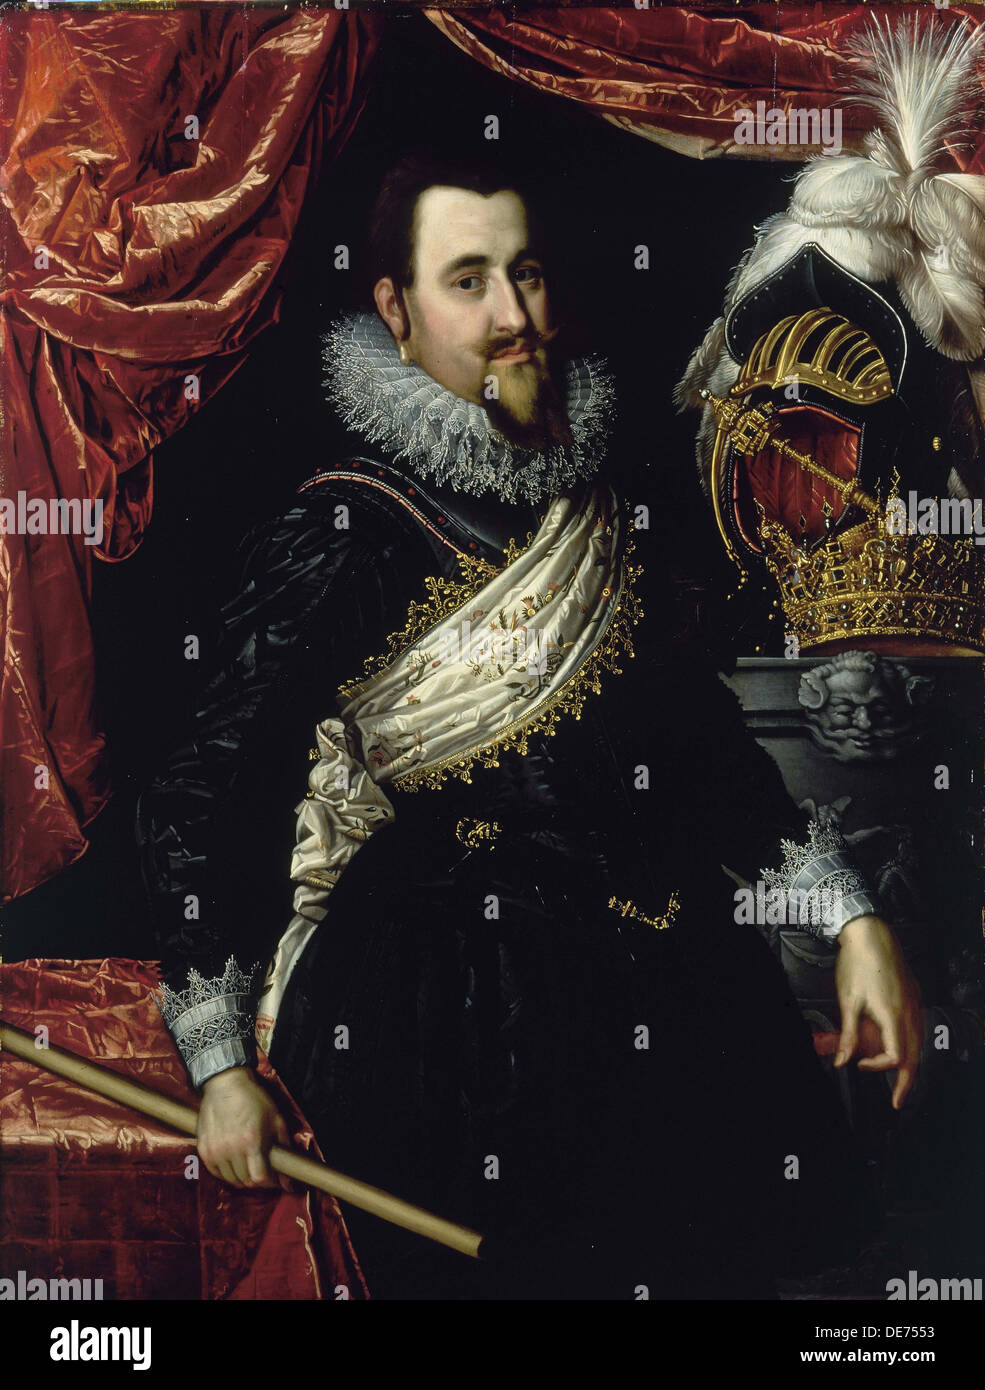 Porträt von König Christian IV. von Dänemark (1577-1648), c. 1615. Künstler: Isaacsz, Pieter (1569-1625) Stockfoto